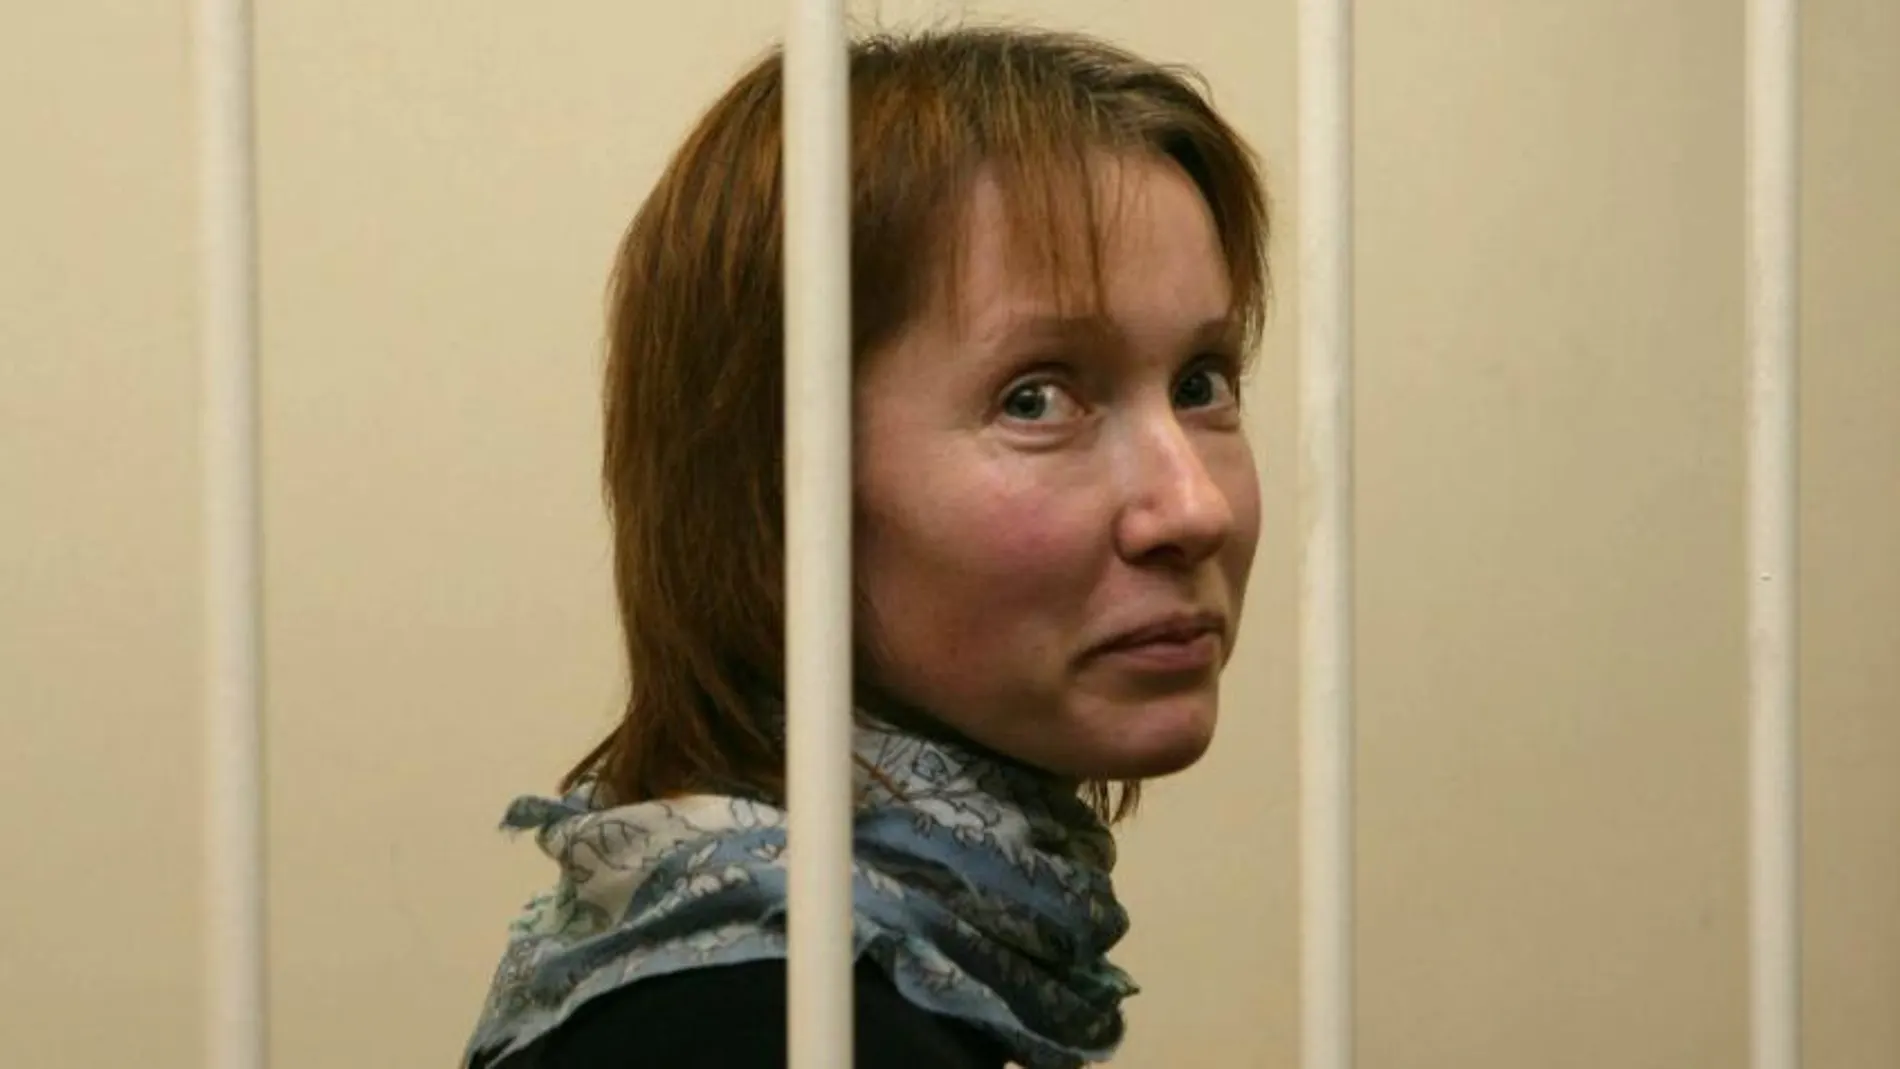 Fotografía facilitada por la organización ecologista Greenpeace que muestra a la activista rusa Ekaterina Zaspa entre rejas en el Tribunal de Primorskiy de San Petesburgo (Rusia) hoy, lunes 18 de noviembre de 2013.